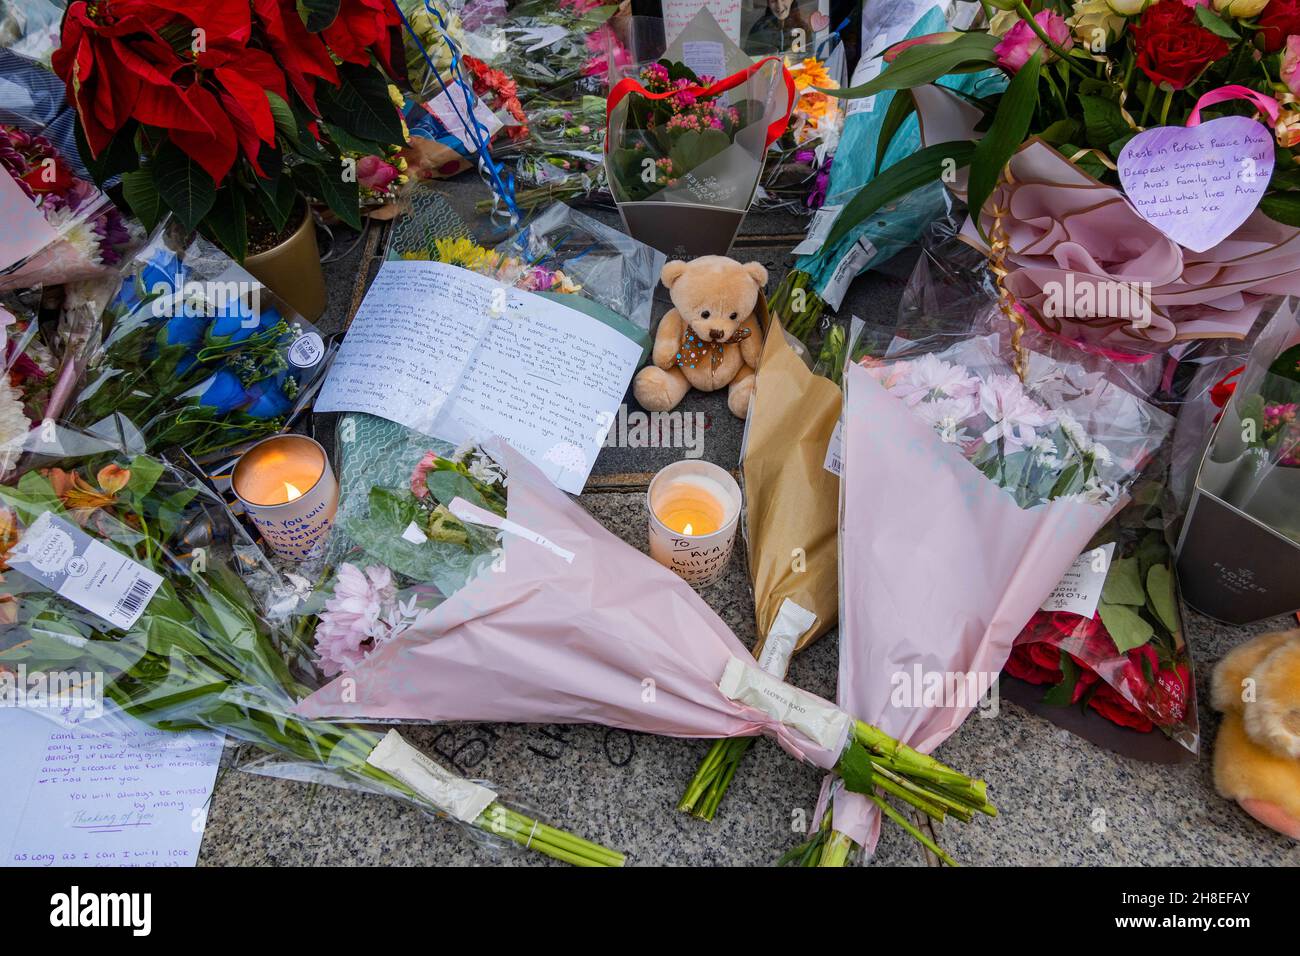 Kerzen, Blumen, Spielzeug und handschriftliche Notizen blieben der 12-jährigen Ava White, die im Stadtzentrum von Liverpool ermordet wurde, zu betrauern Stockfoto